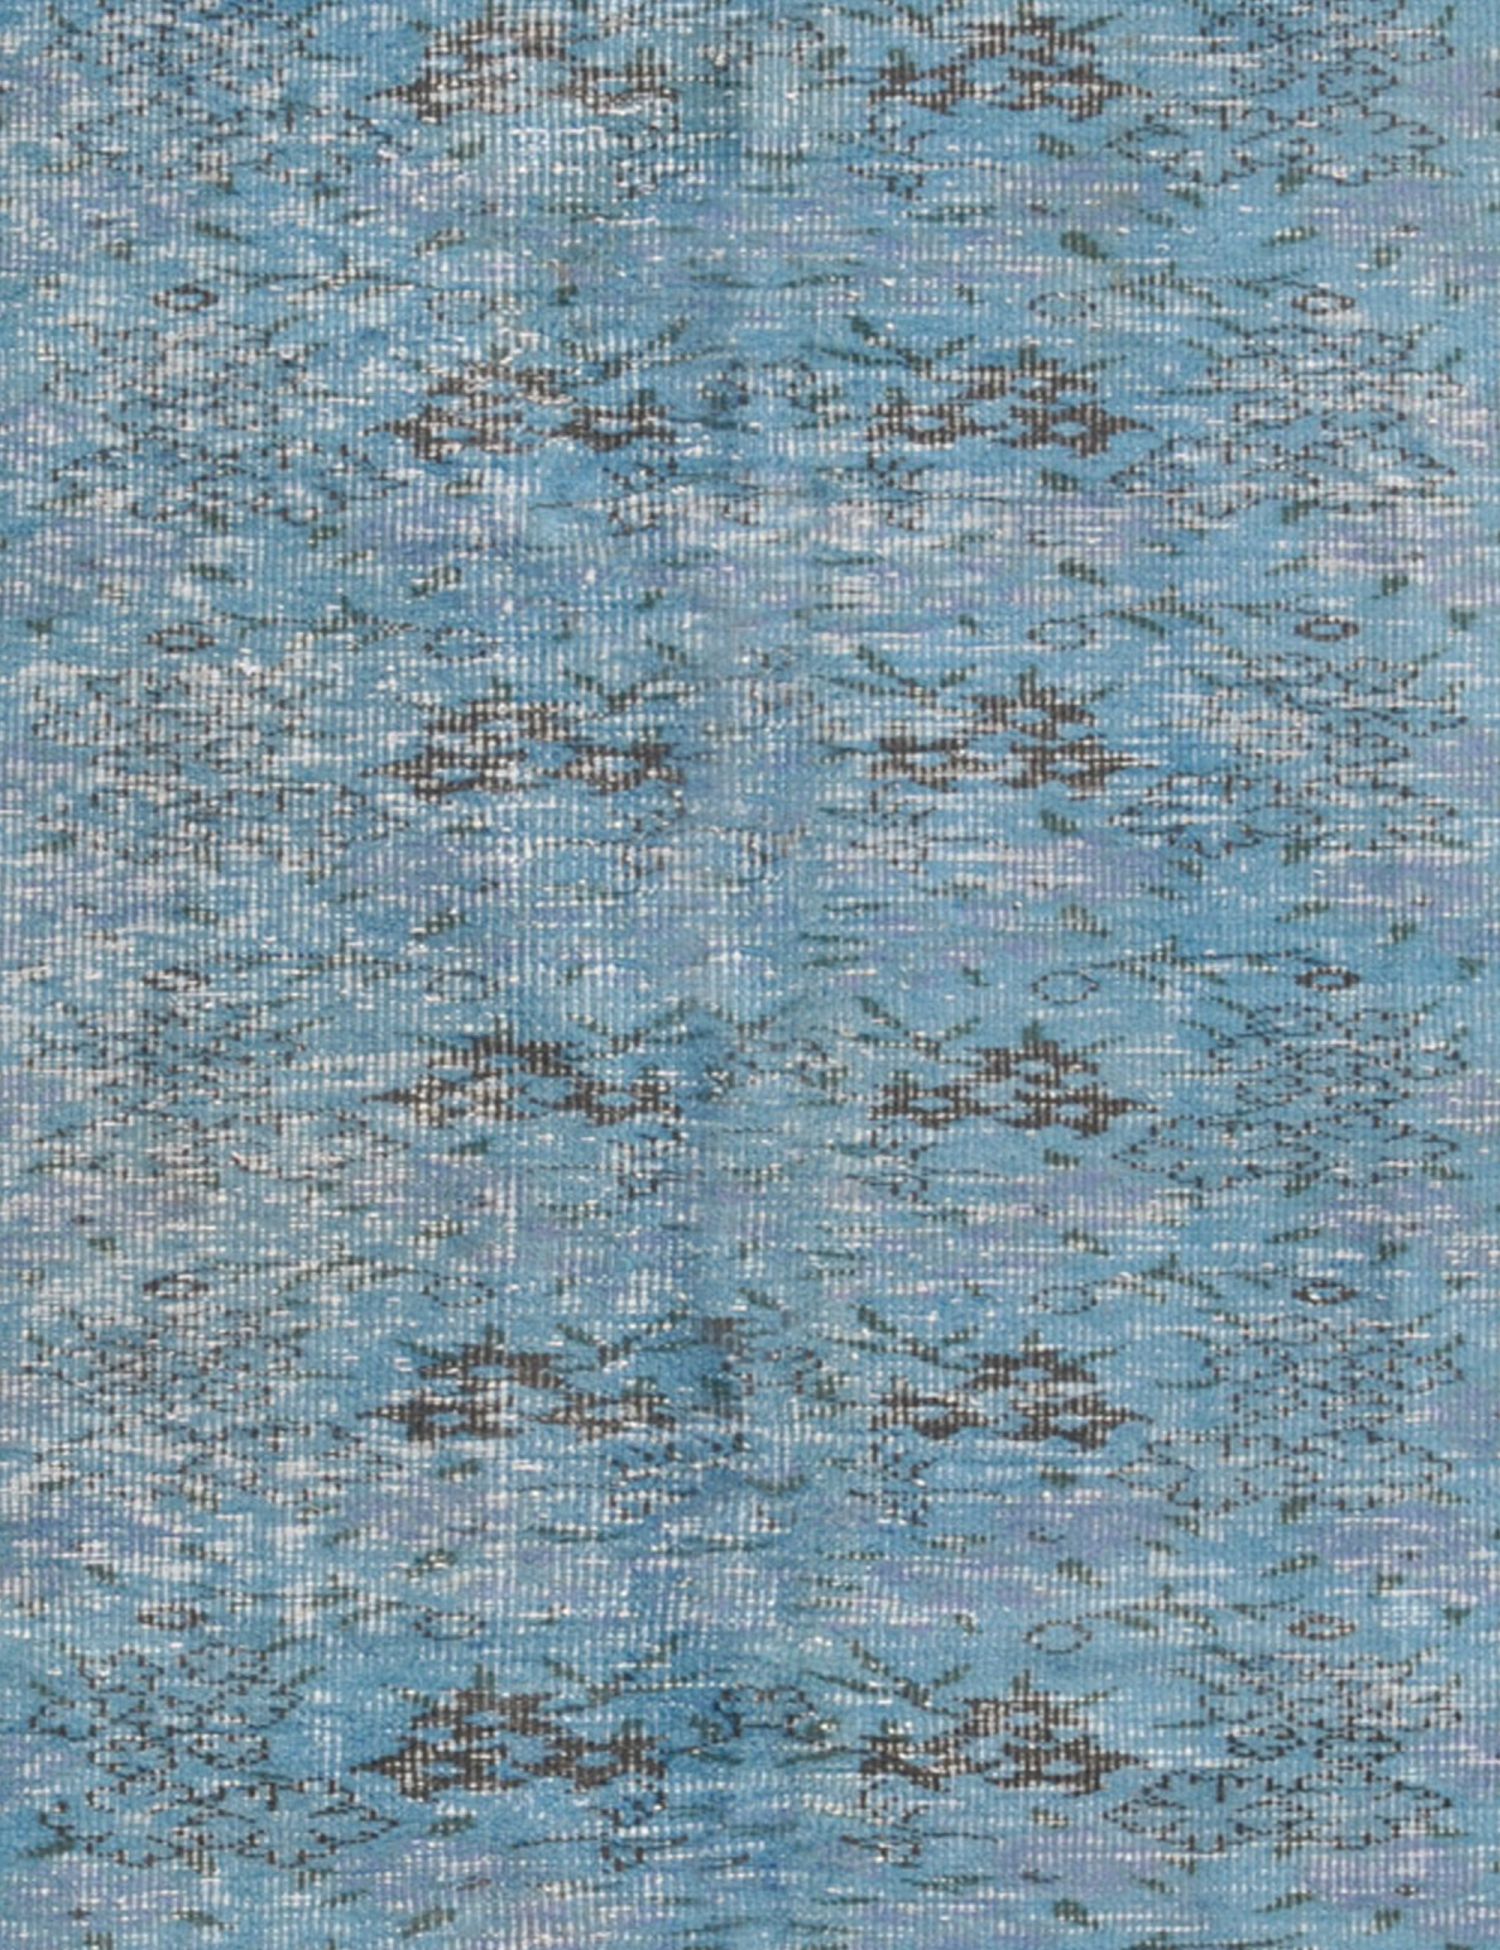 Vintage Teppich  blau <br/>161 x 161 cm